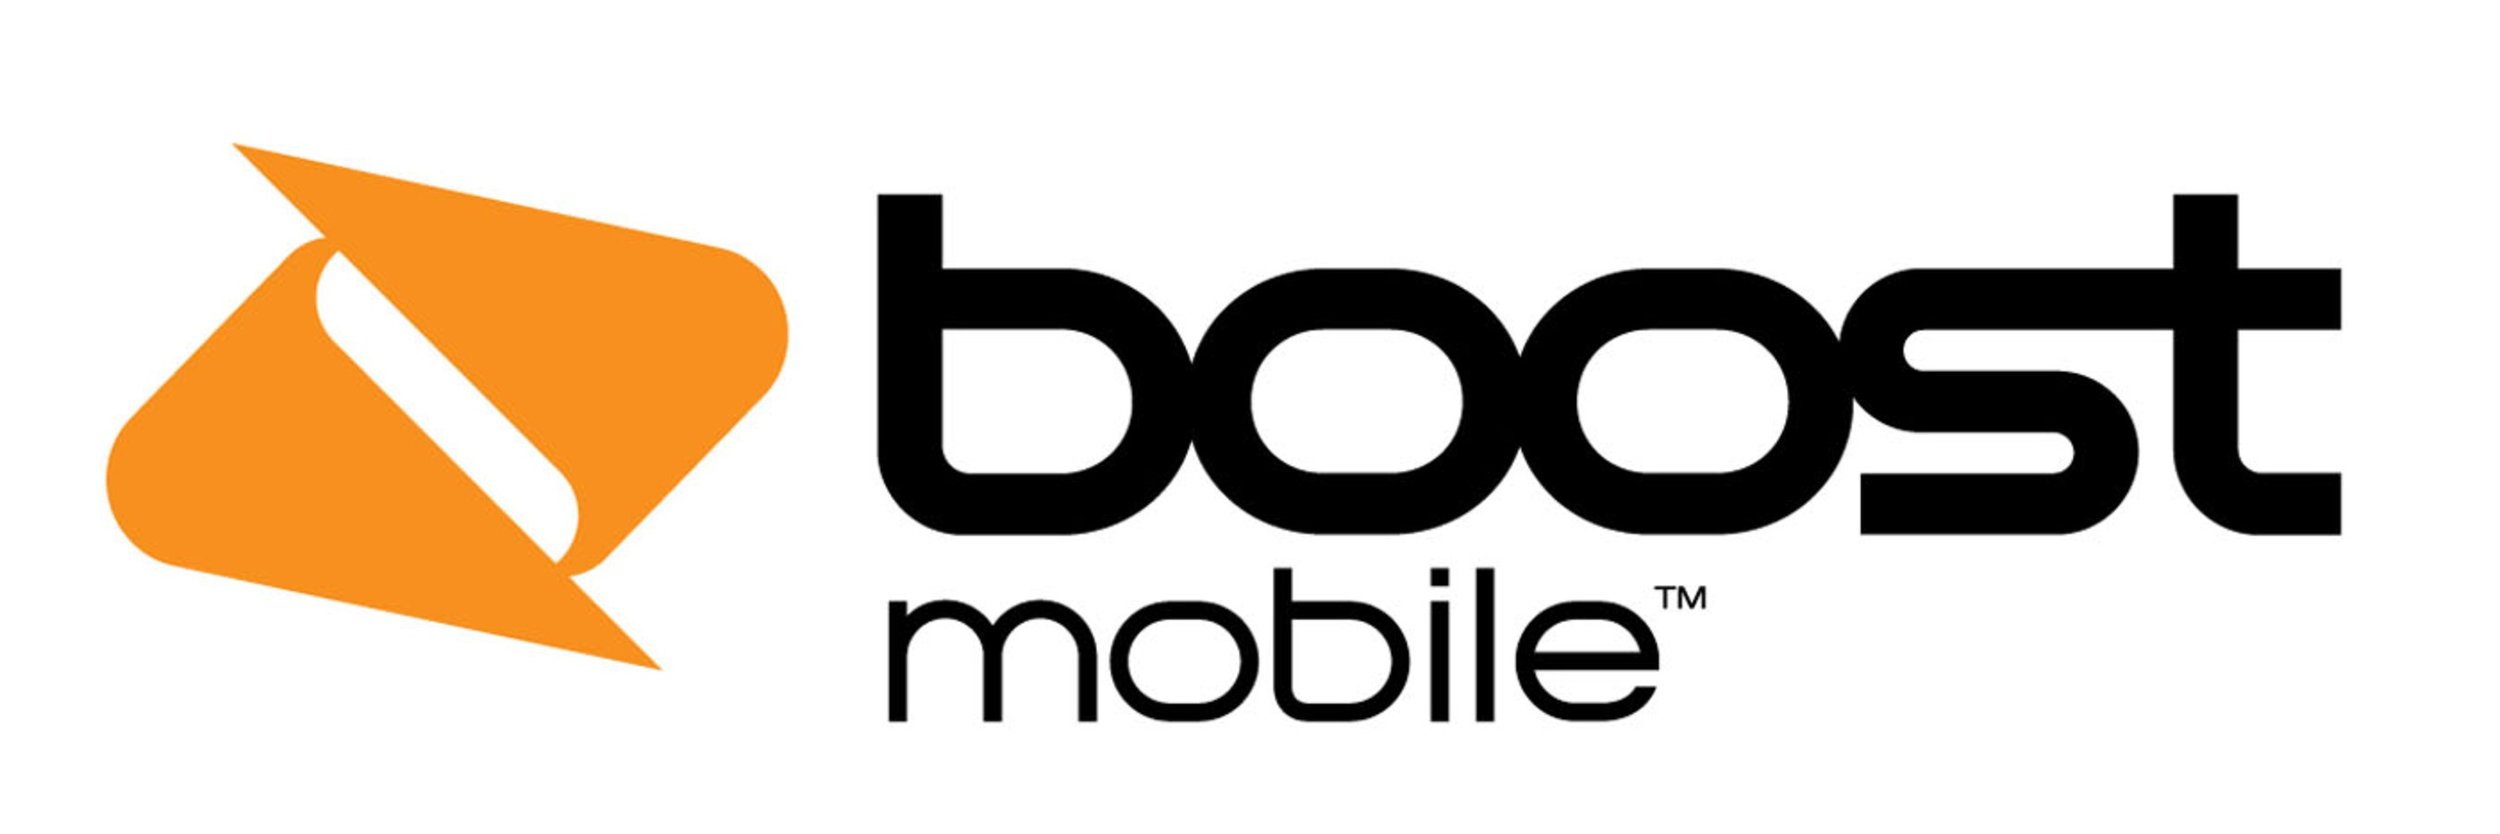 boost mobile logo.jpg